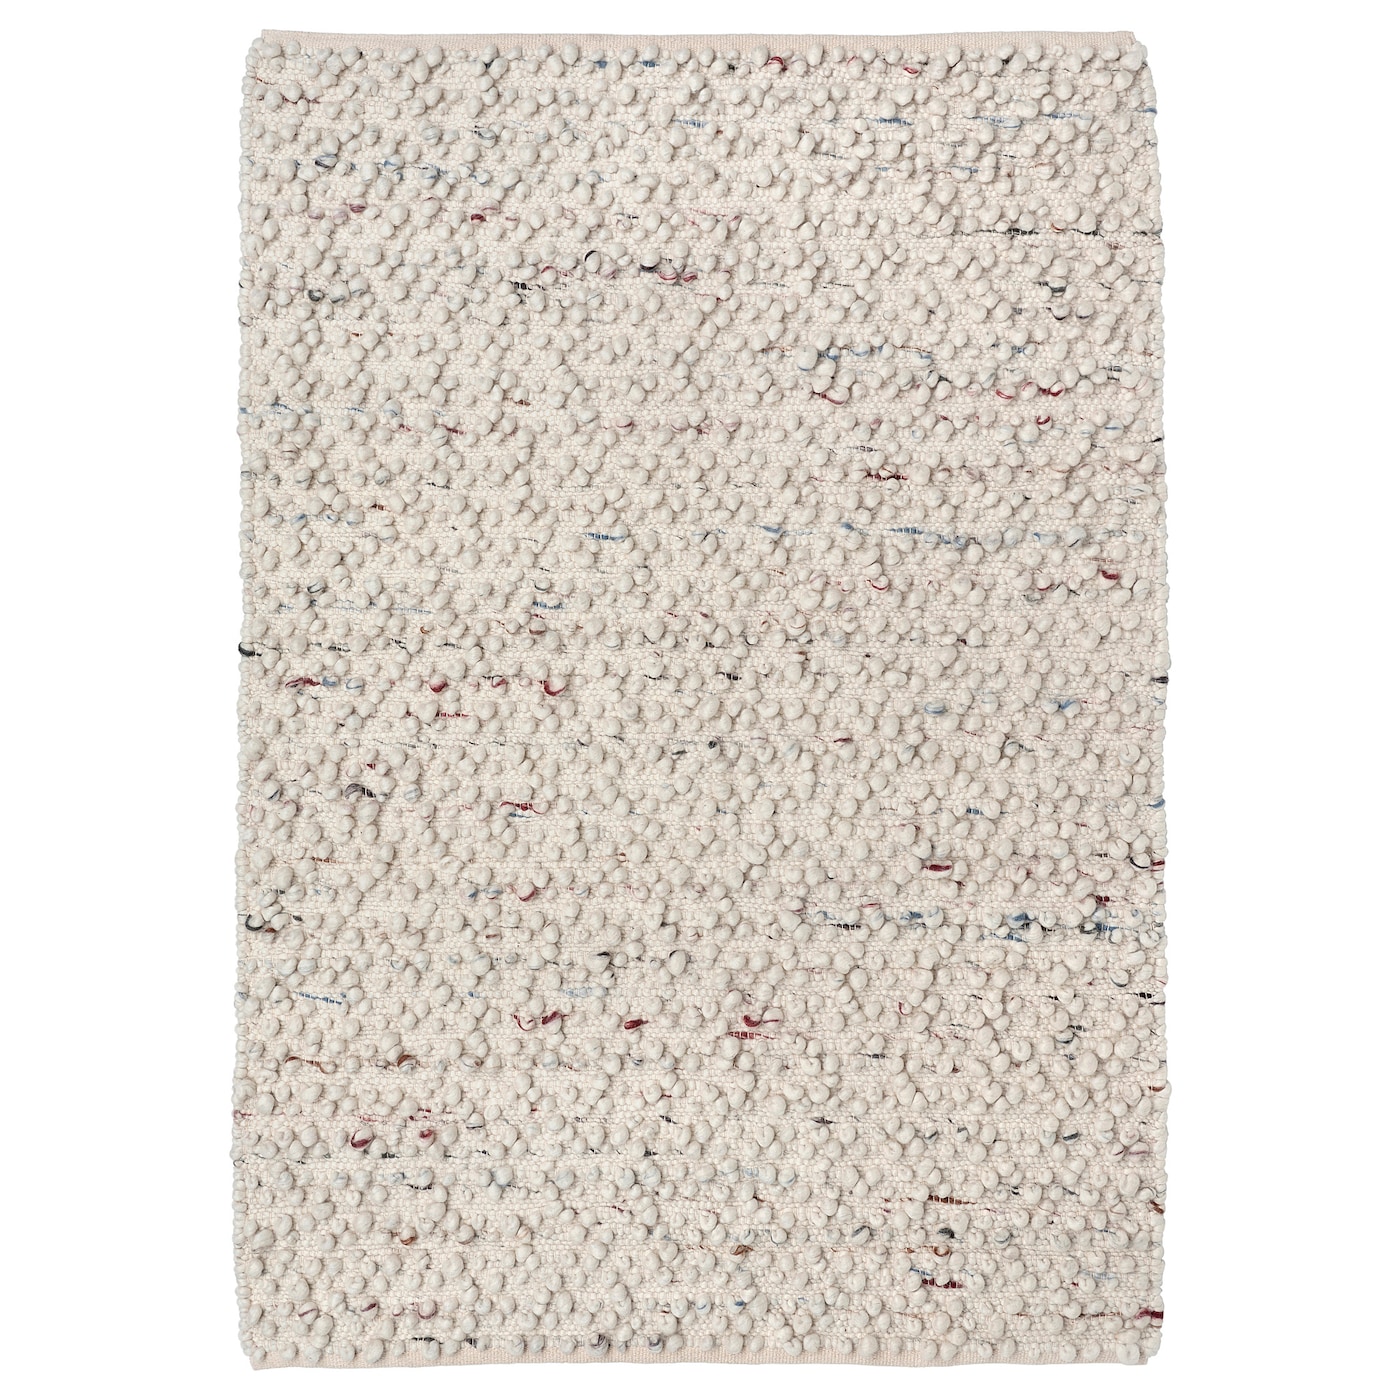 SVäRDBORG - dywan tkany na płasko wykonano ręcznie kremowy/wielobarwny